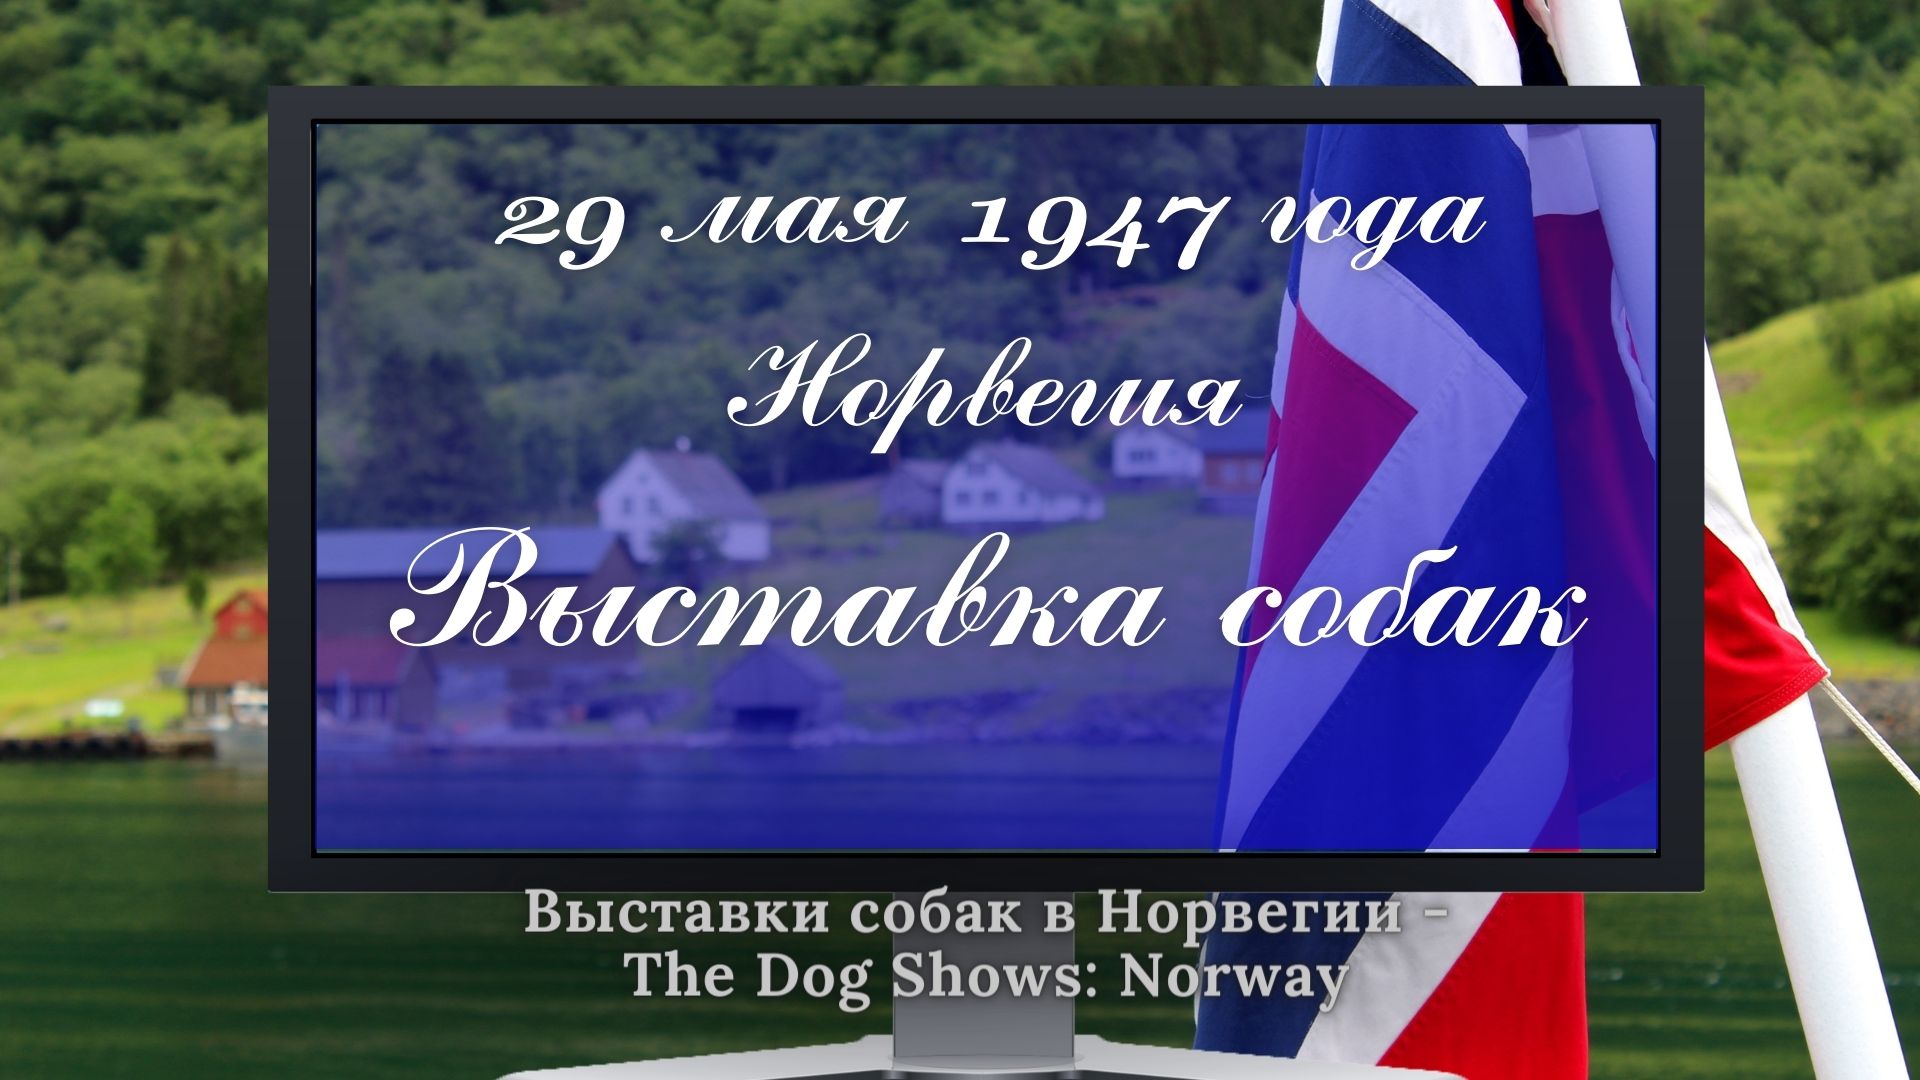 29 мая 1947 года. Выставка собак в Норвегии.